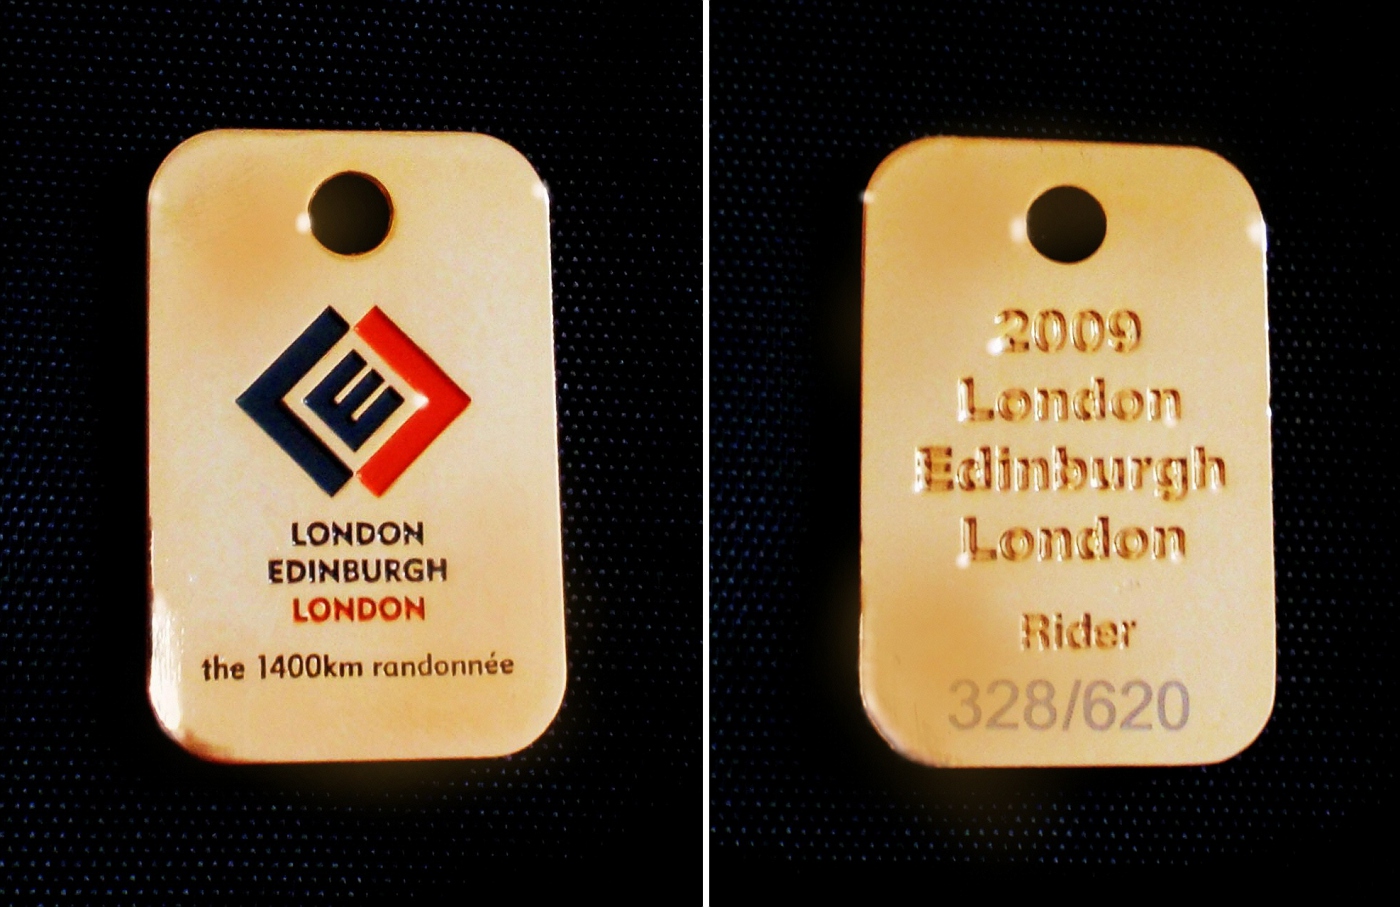 Manfred's medal